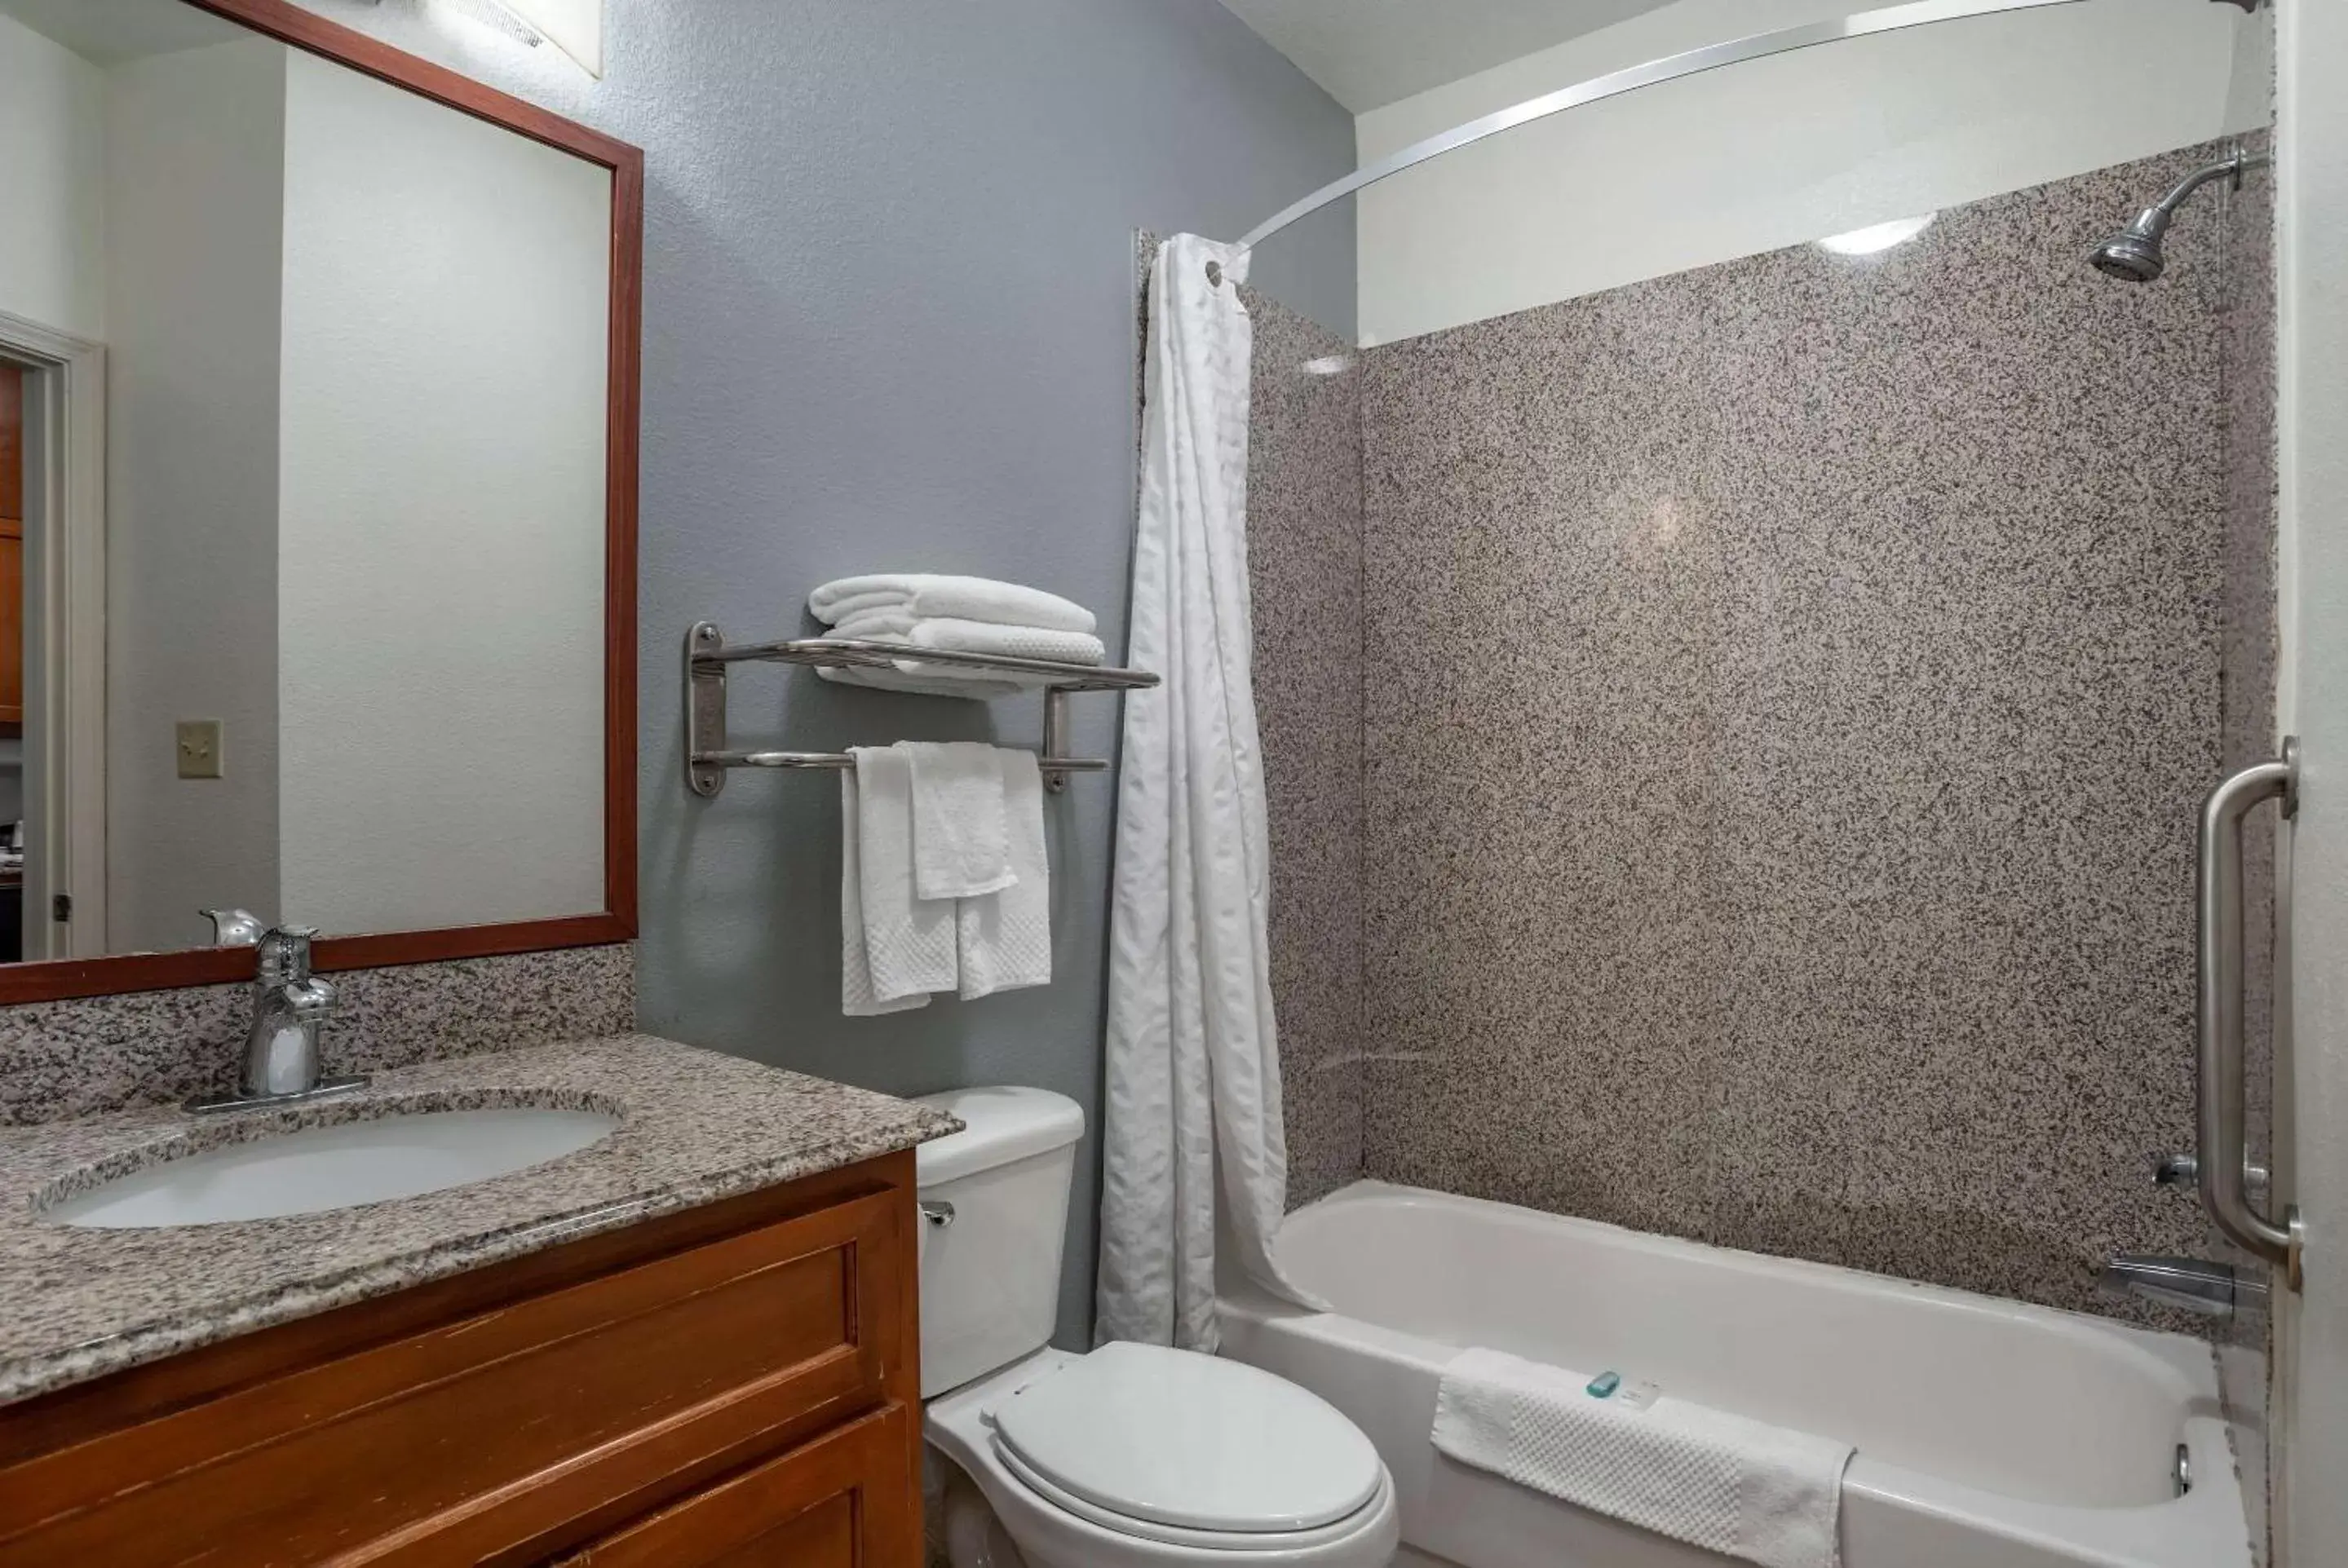 Bedroom, Bathroom in MainStay Suites Denham Springs - Baton Rouge East